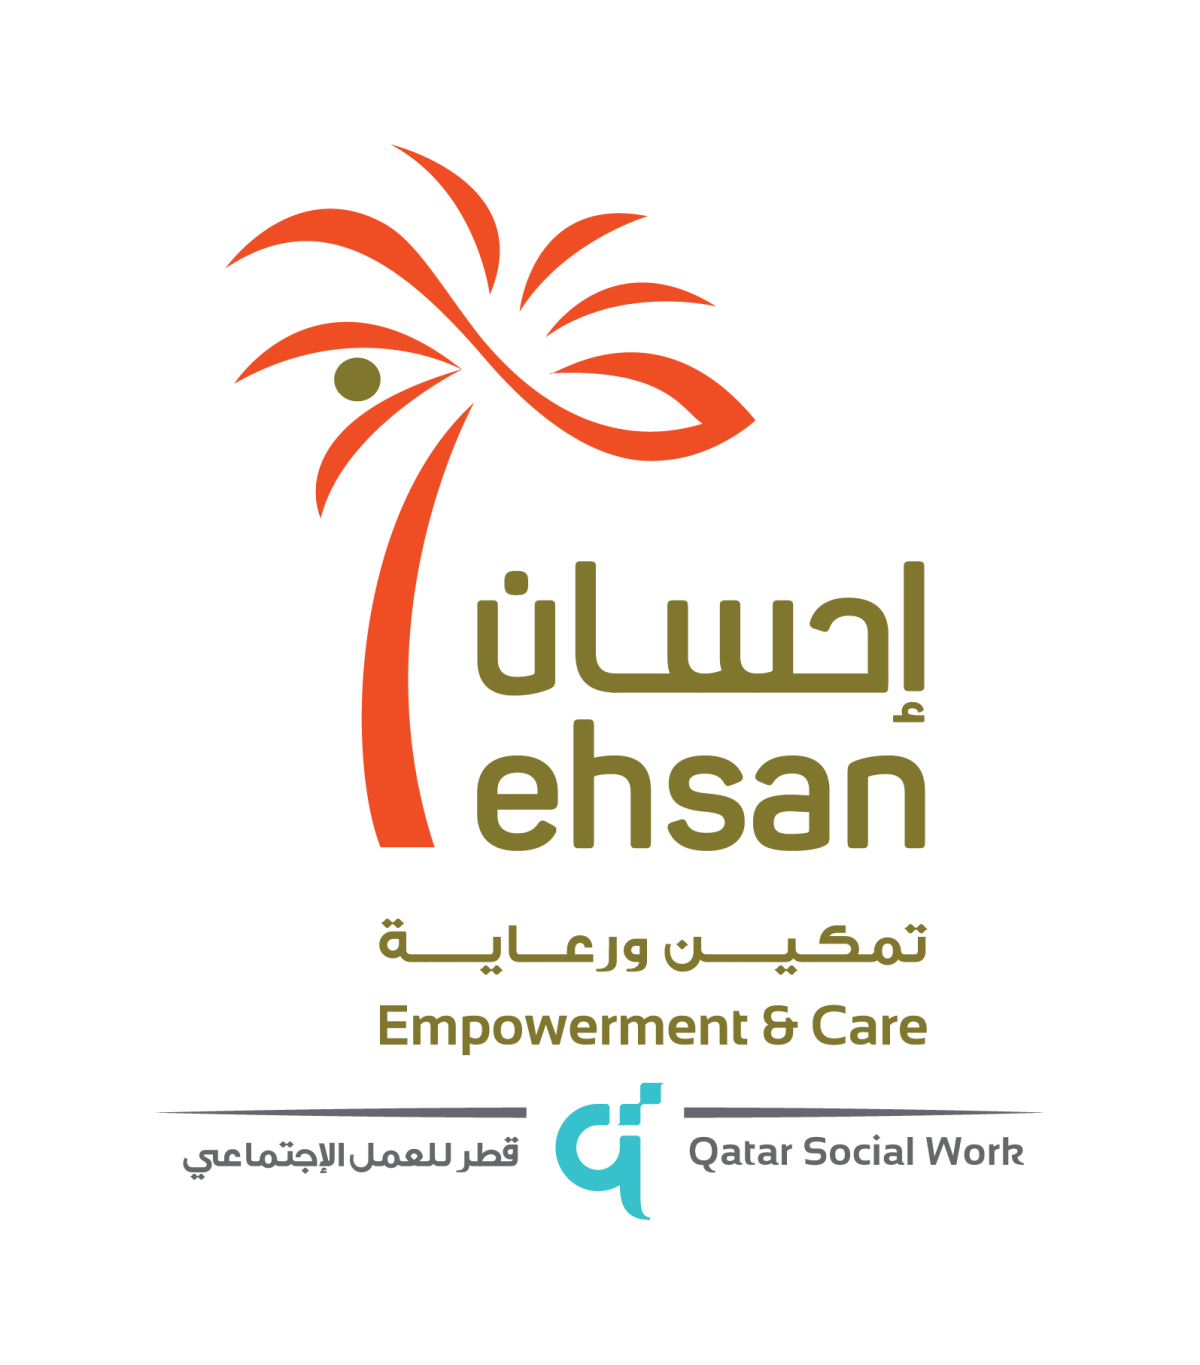 ehsan logo